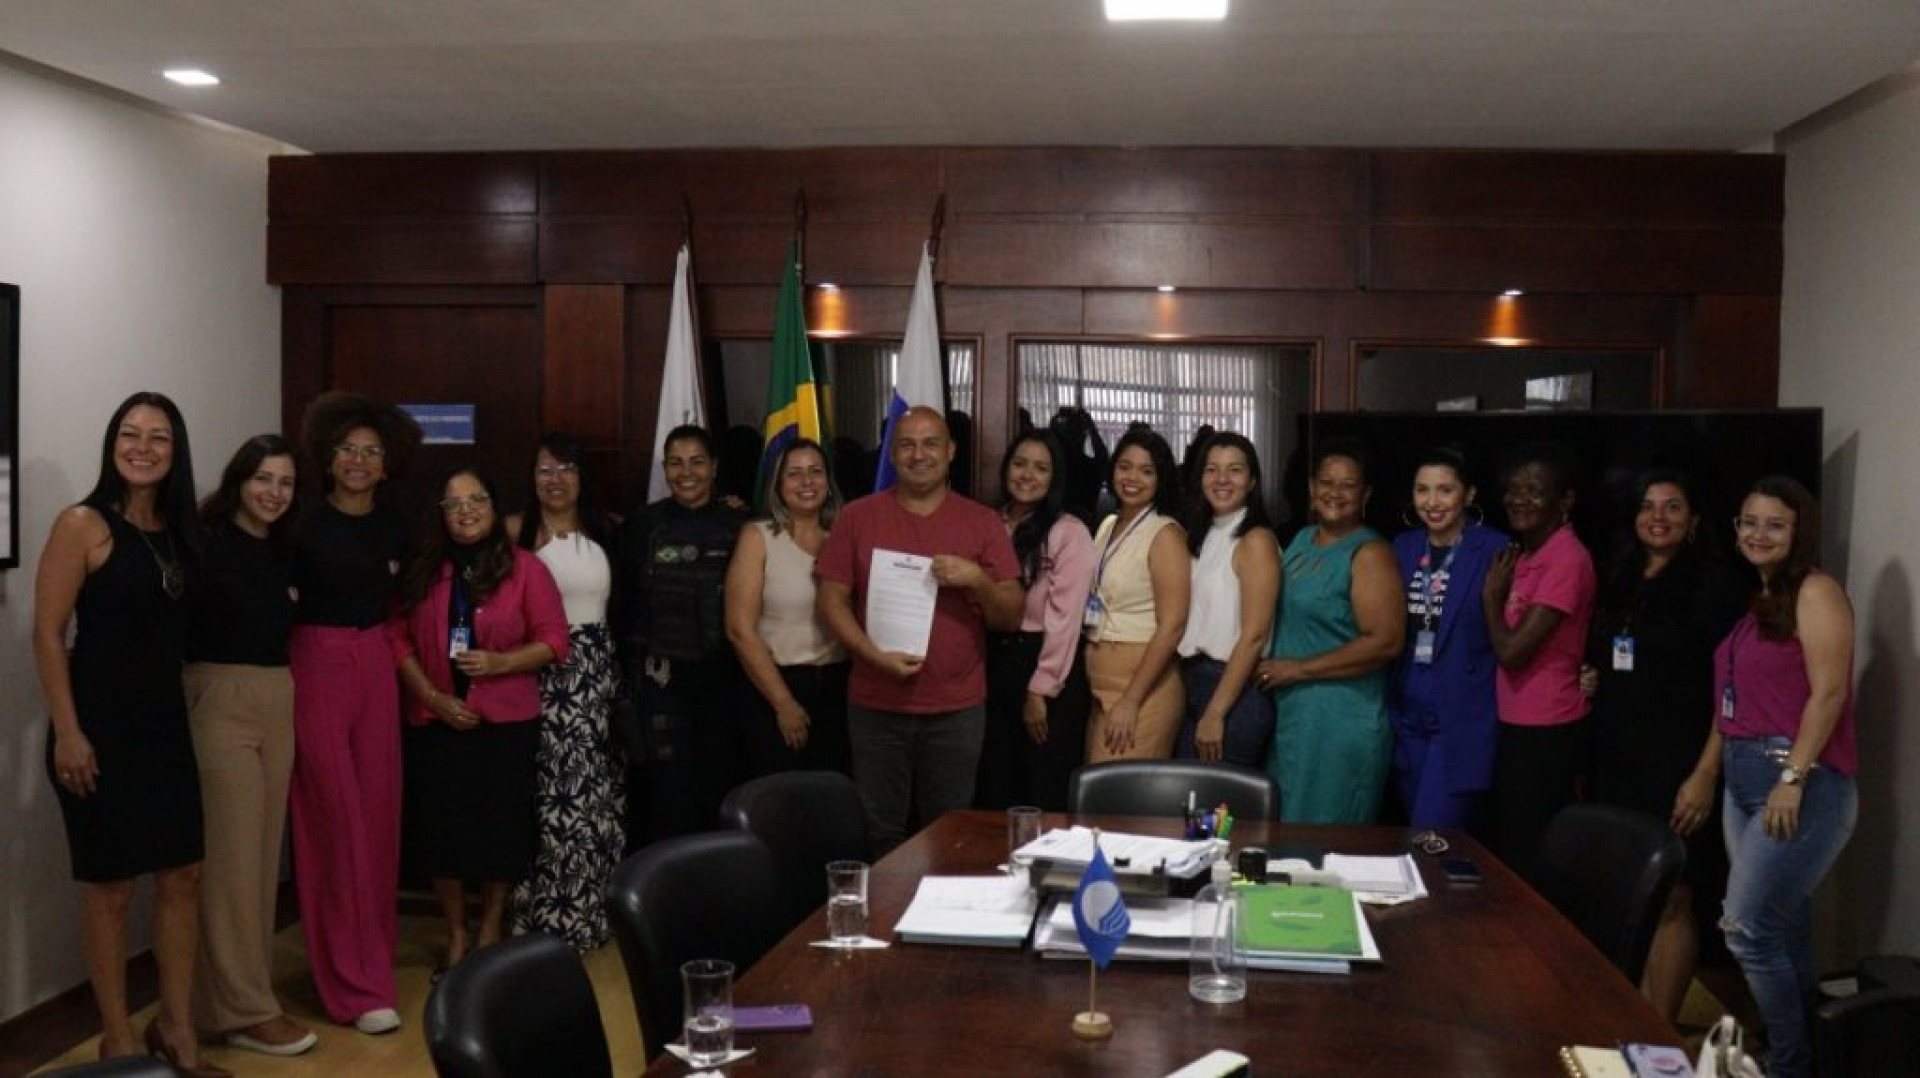 A ONG Amigas da Mama, que oferece apoio e acolhimento às pessoas em tratamento contra o câncer, também marcou presença, representada pela presidente Tânia Regina  - Rede social 